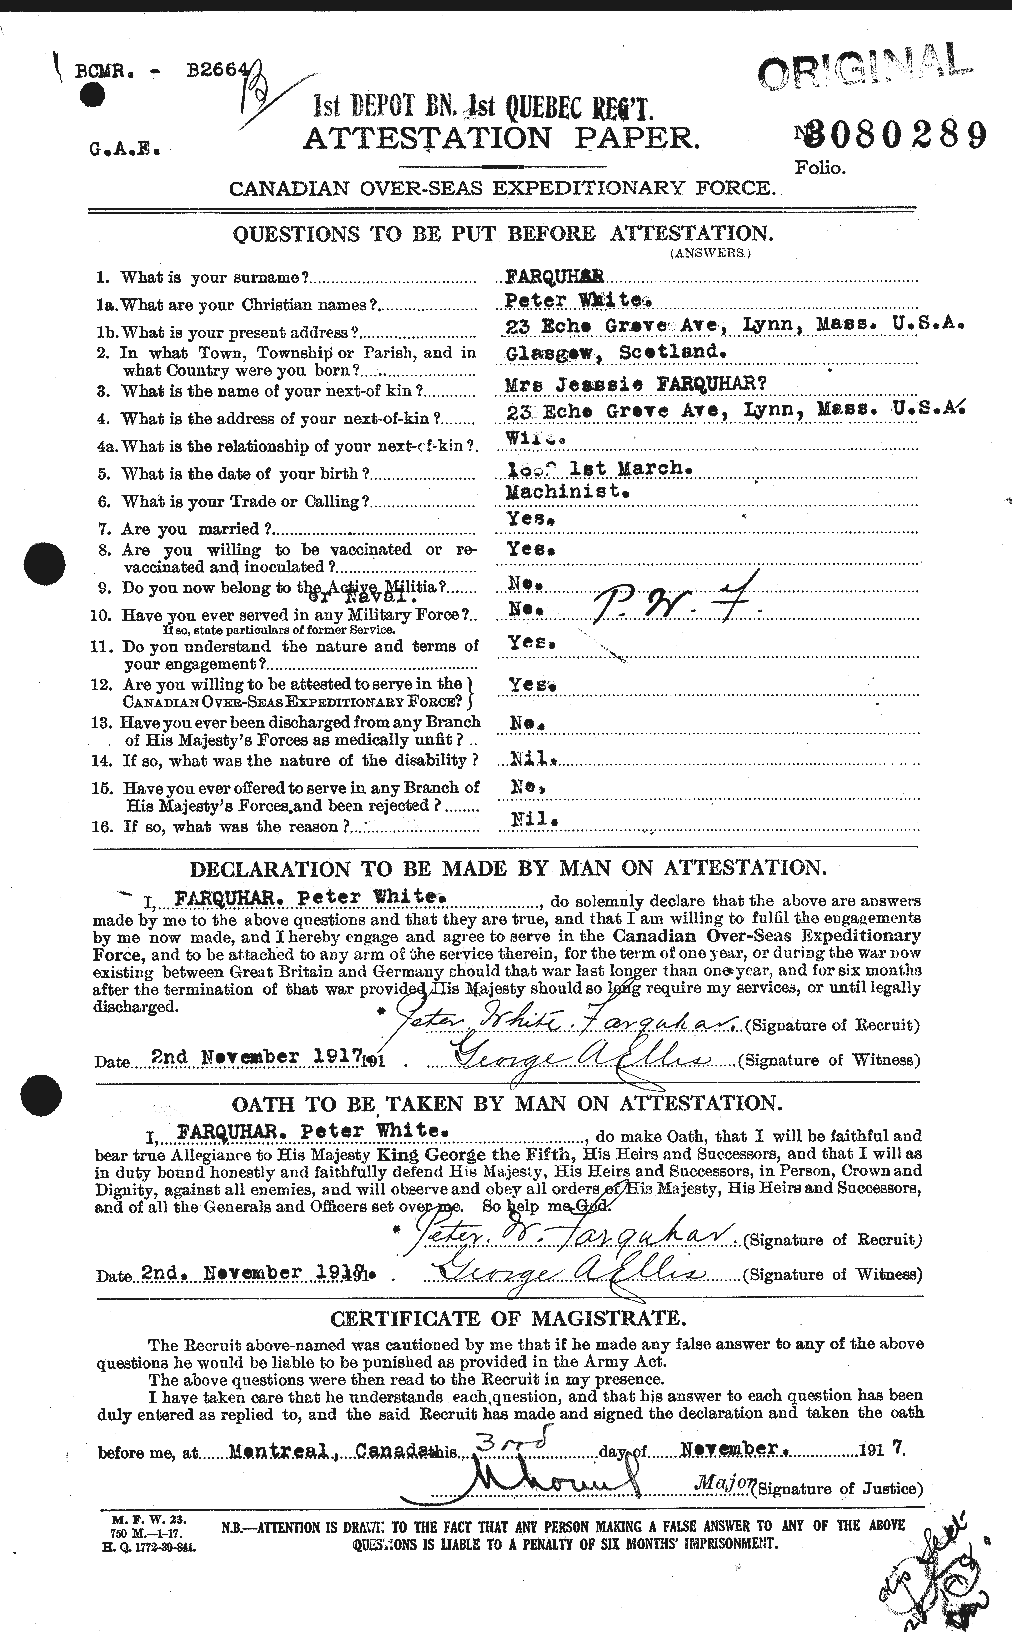 Dossiers du Personnel de la Première Guerre mondiale - CEC 318792a